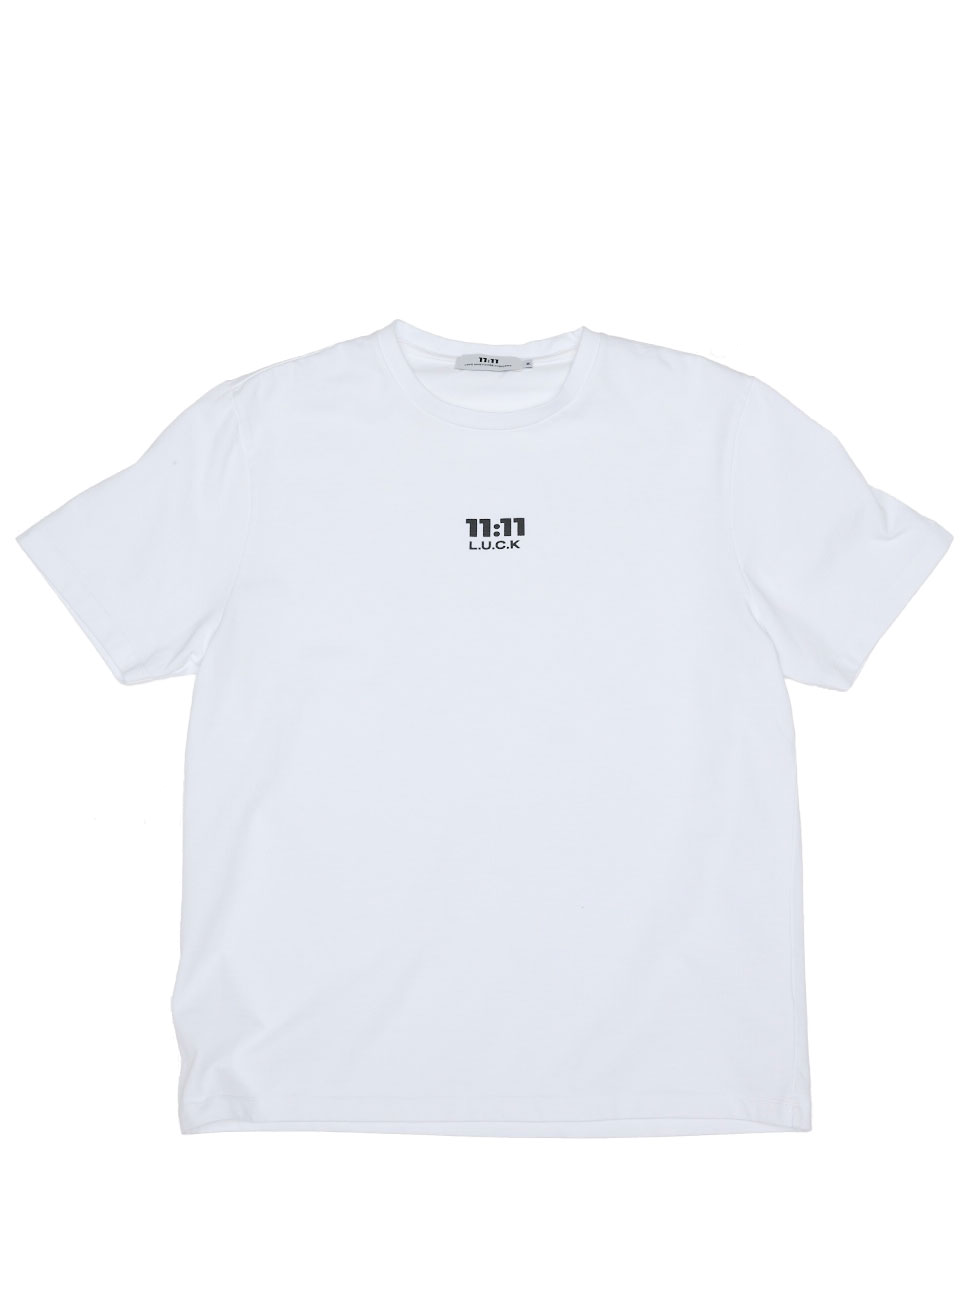 1111 luck basic logo t-shirt white